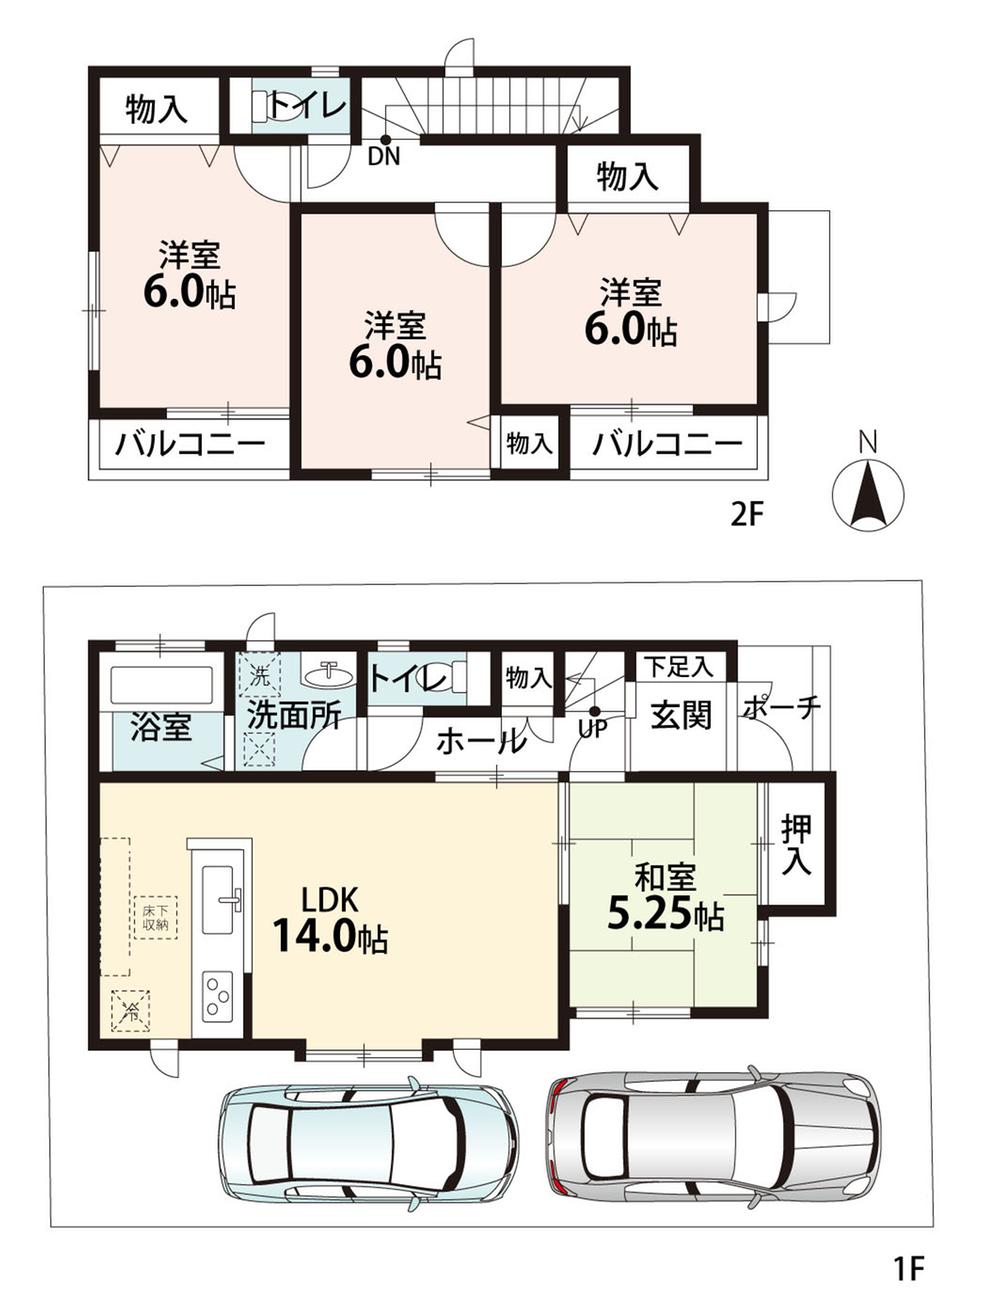 Floor plan. (D section), Price 27,800,000 yen, 4LDK, Land area 101.5 sq m , Building area 91.5 sq m